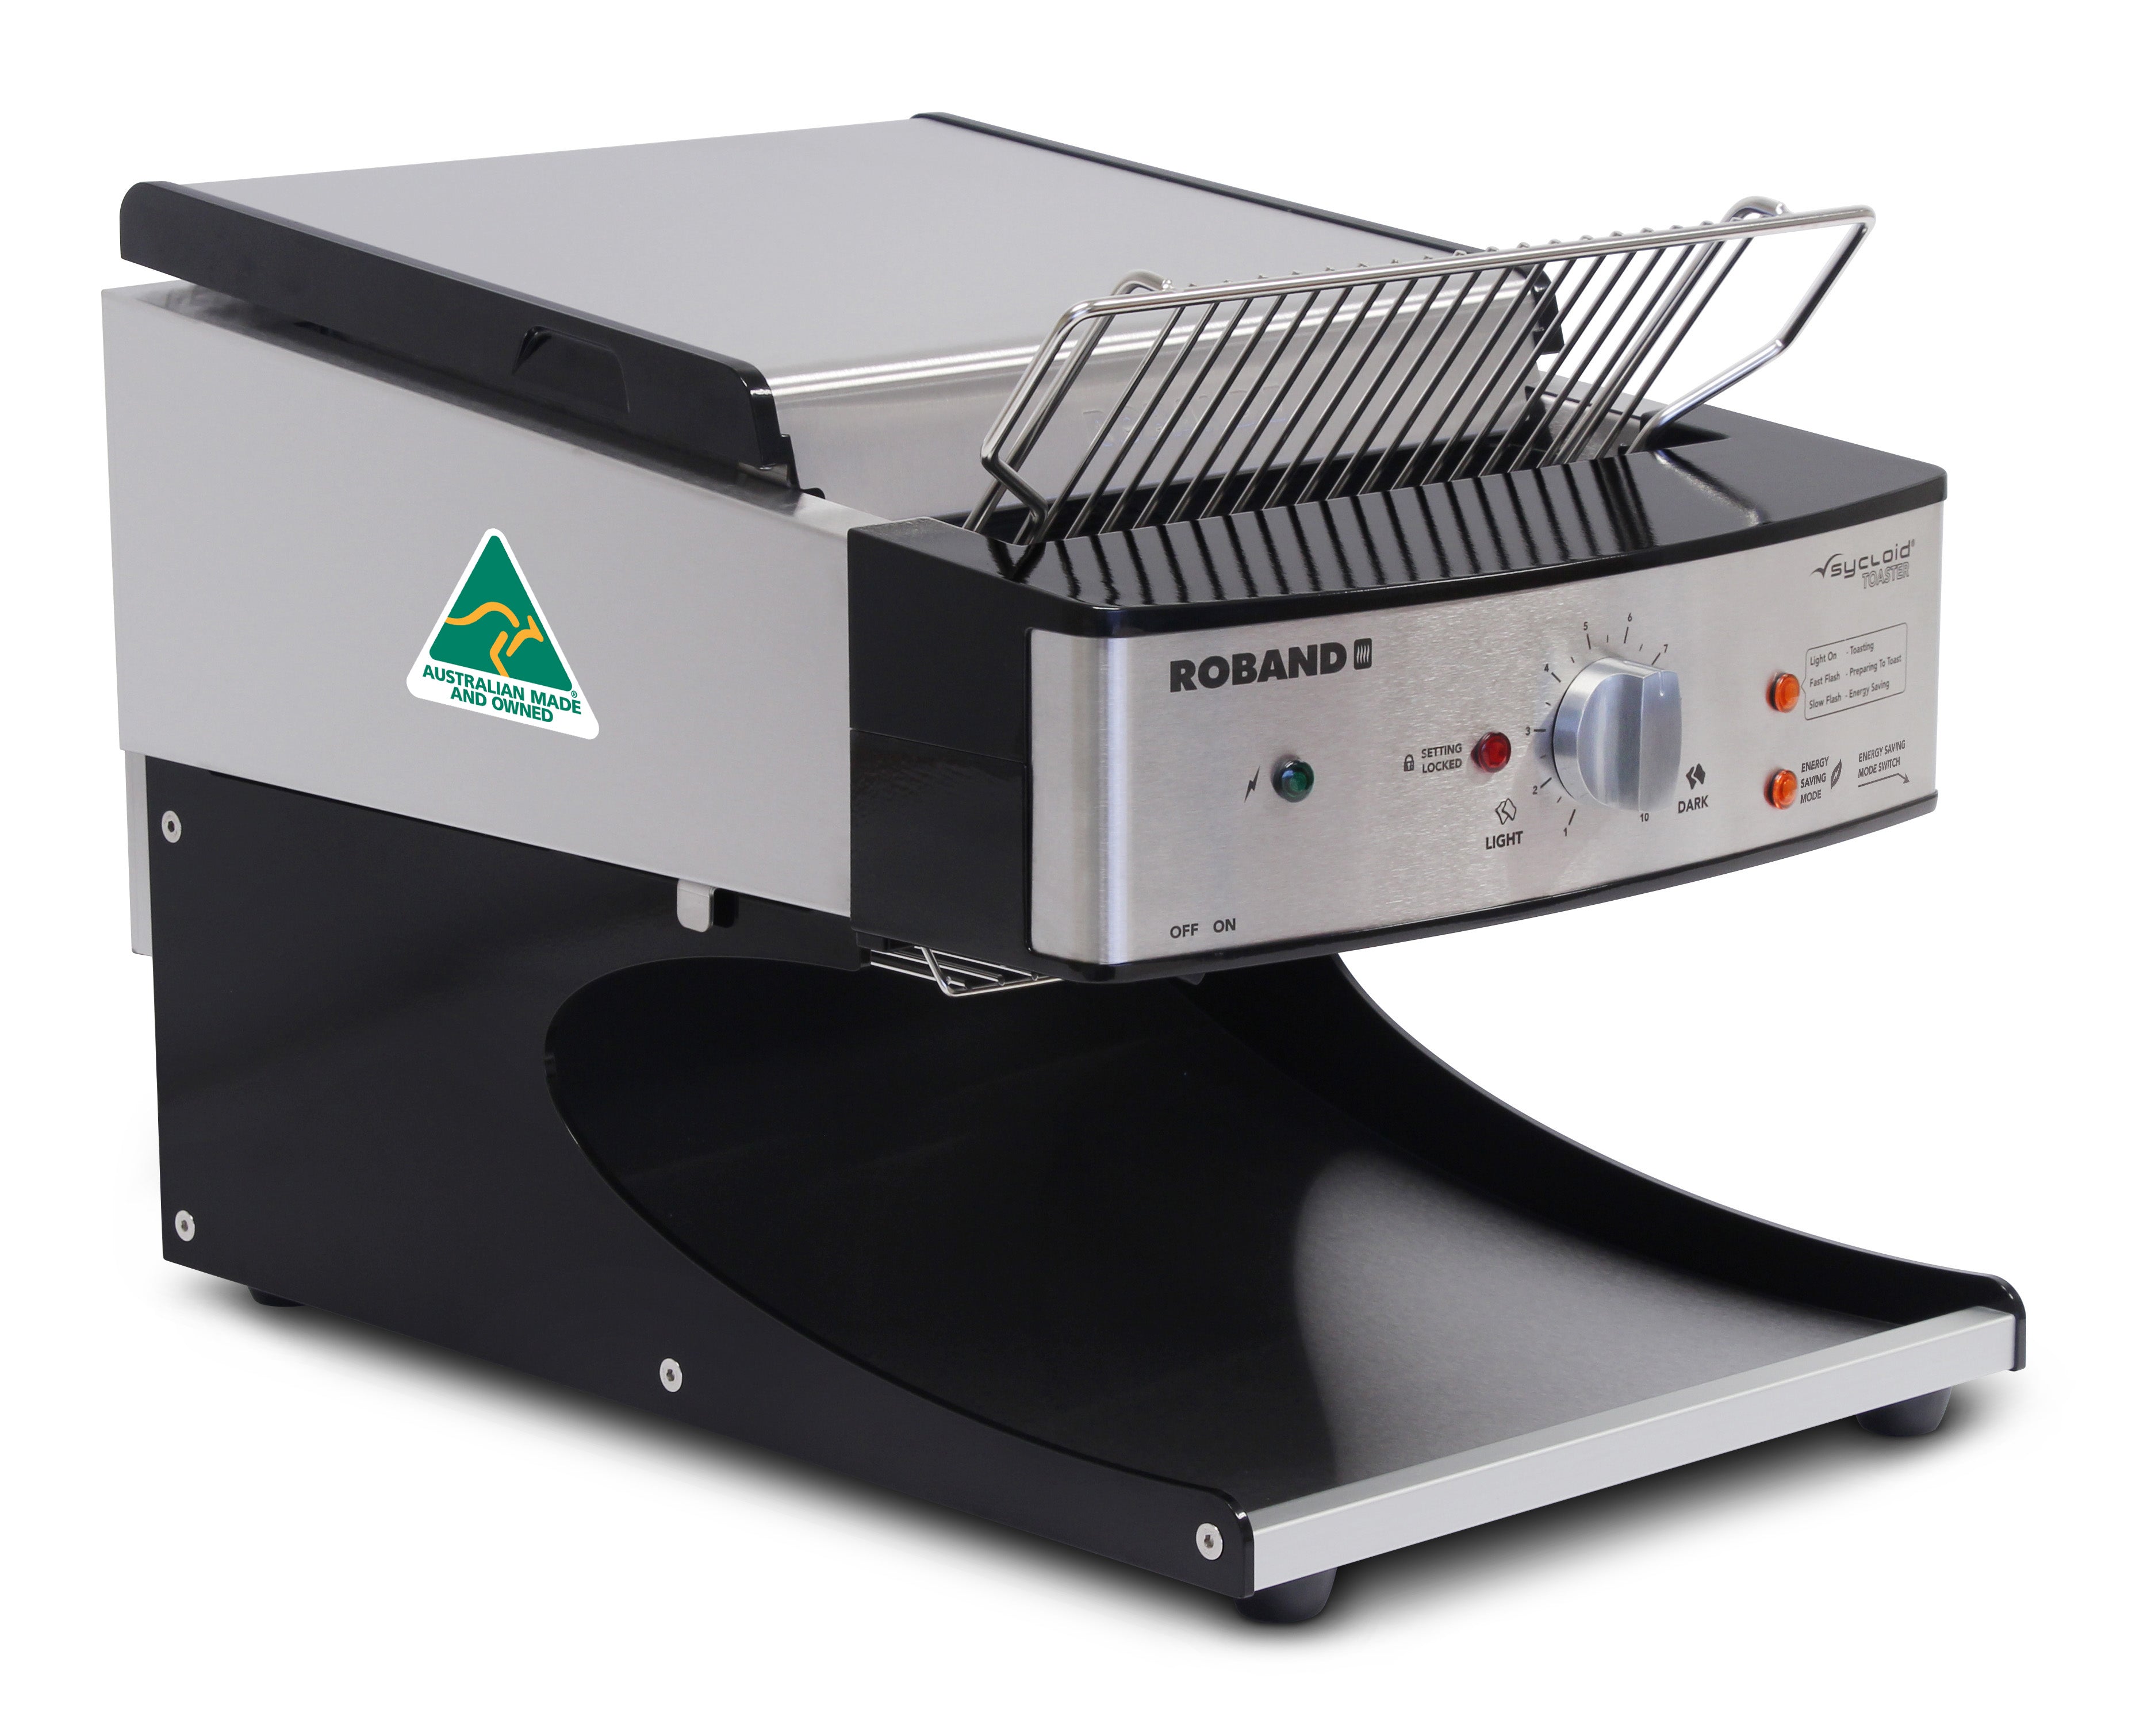 Thumbnail - Roband Sycloid ST500AB - Conveyor Toaster